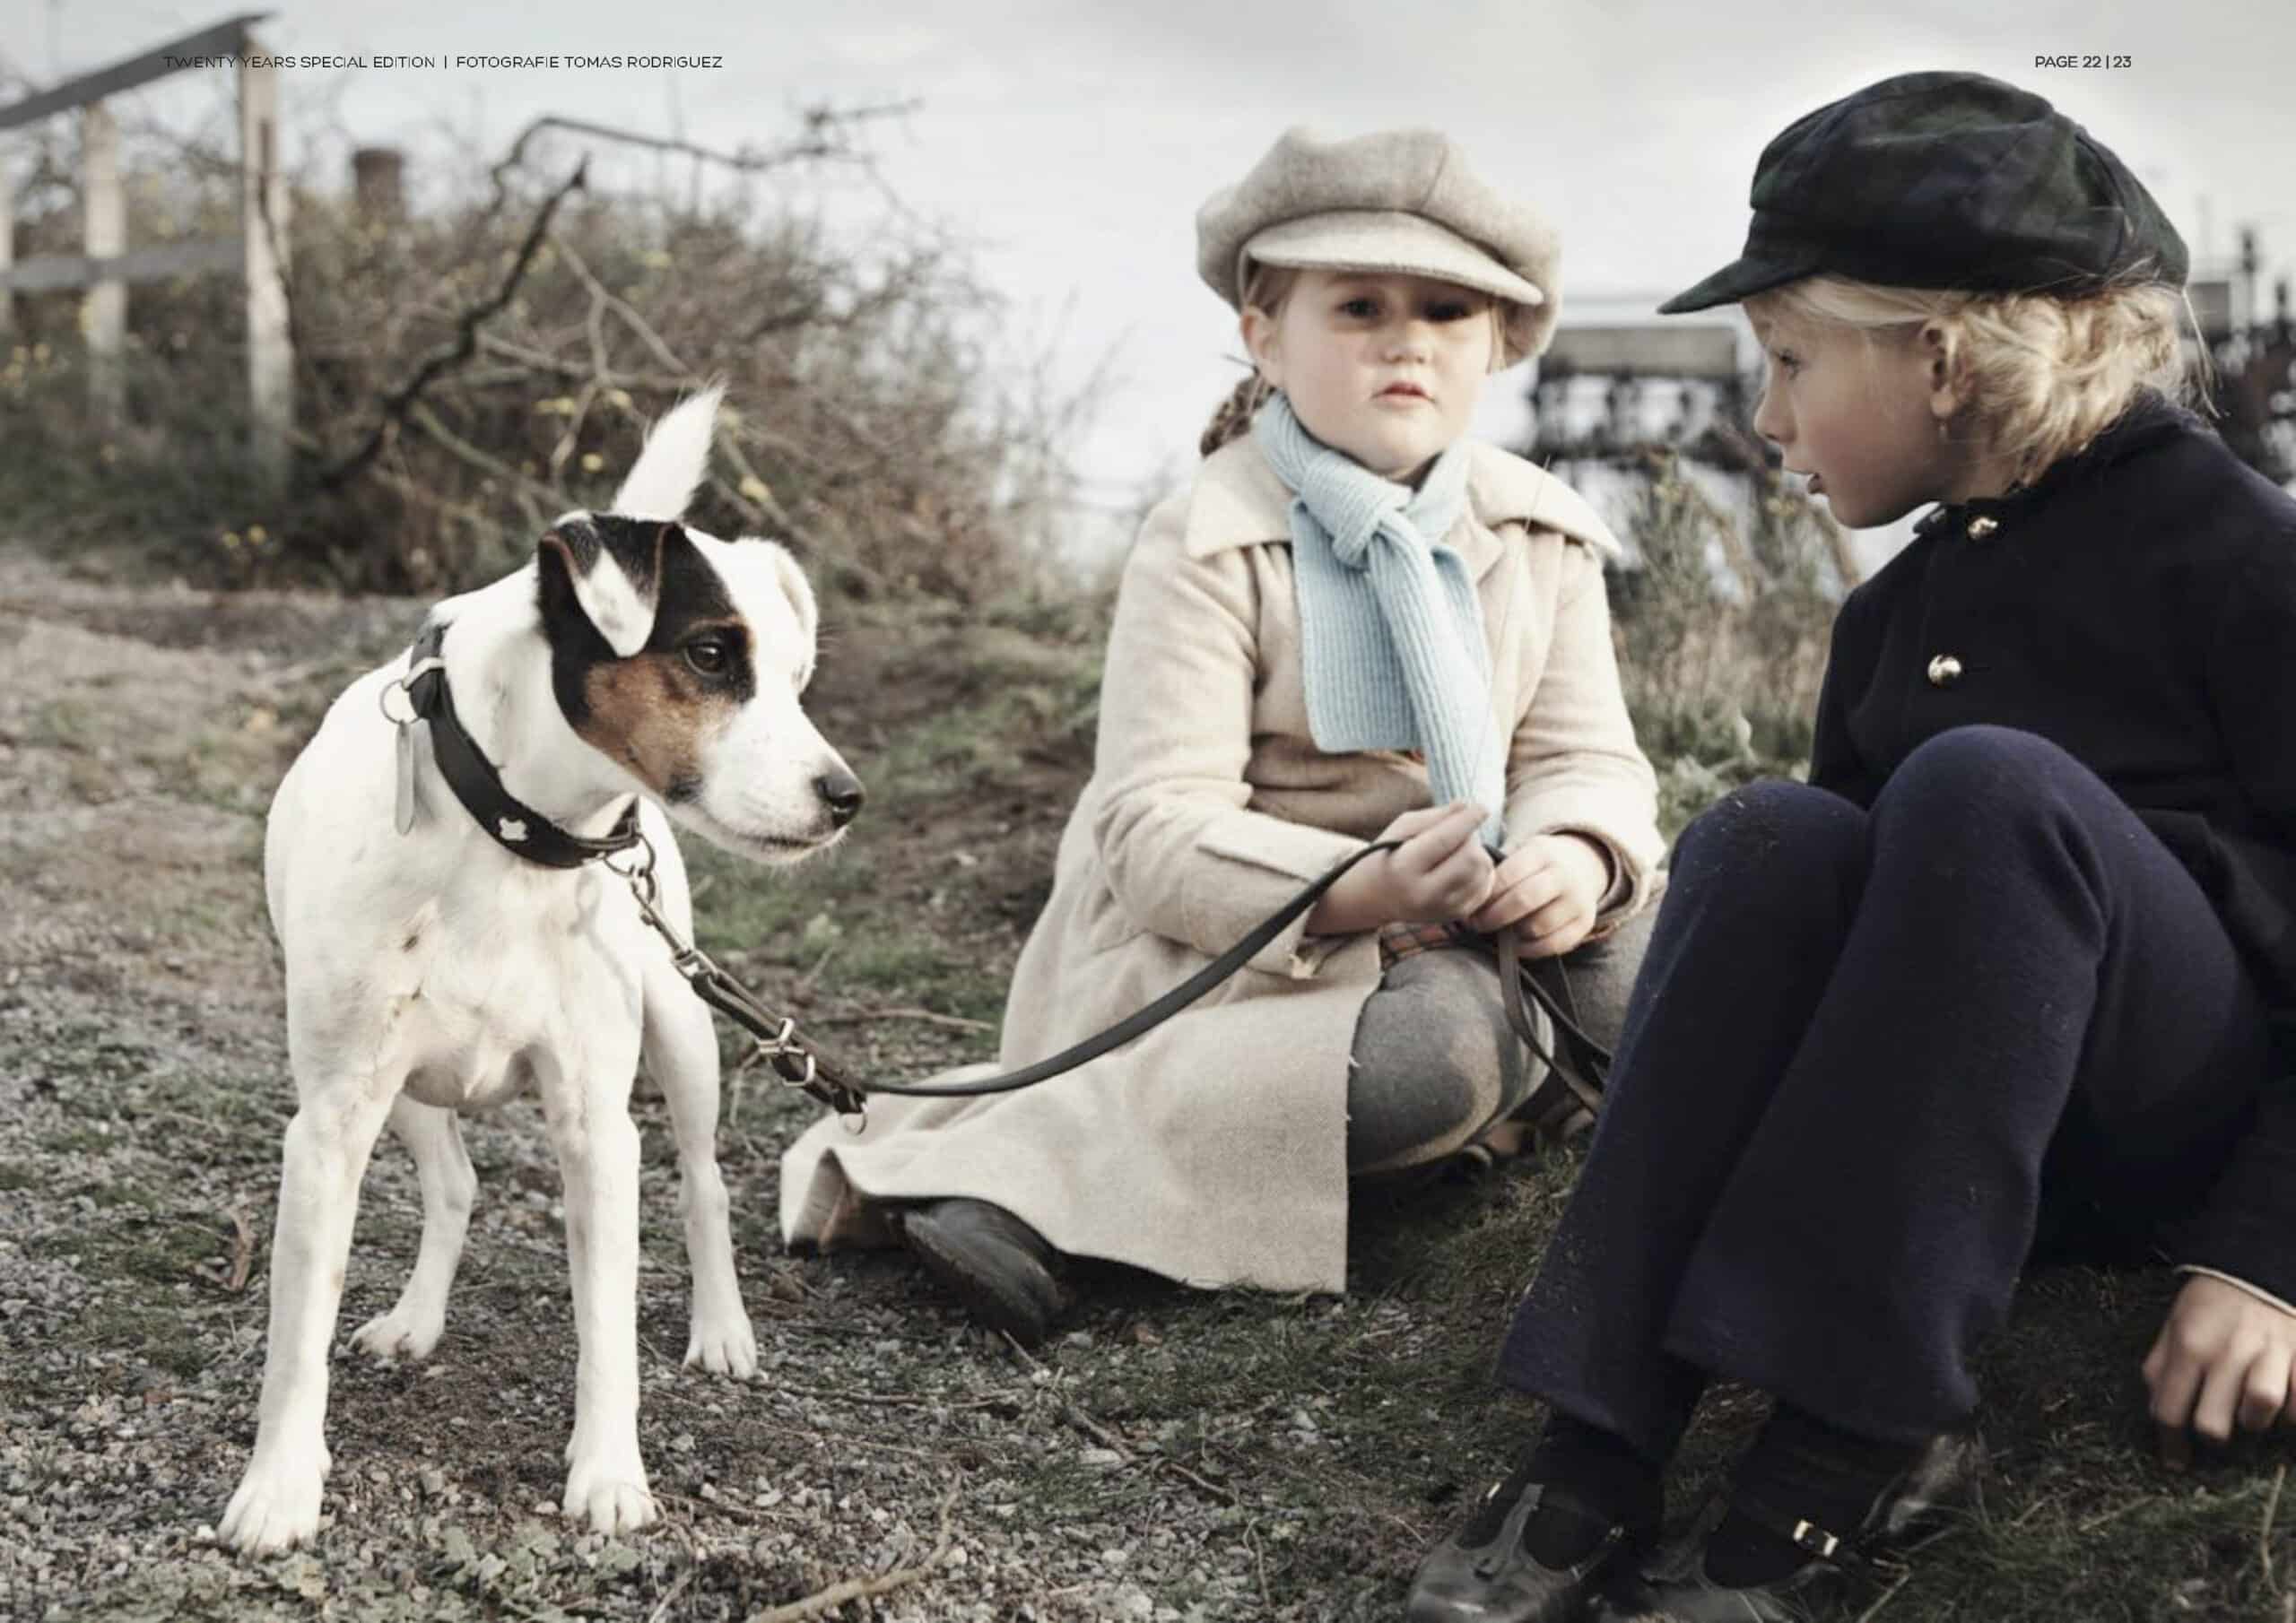 Zwei kleine Kinder in Vintage-Kleidung sitzen auf einem grasbewachsenen Hügel und neben ihnen ist ein weiß-brauner Hund an der Leine. Dies stellt eine heitere, altmodische Szene dar. Ein Kind starrt das andere intensiv an. © Fotografie Tomas Rodriguez